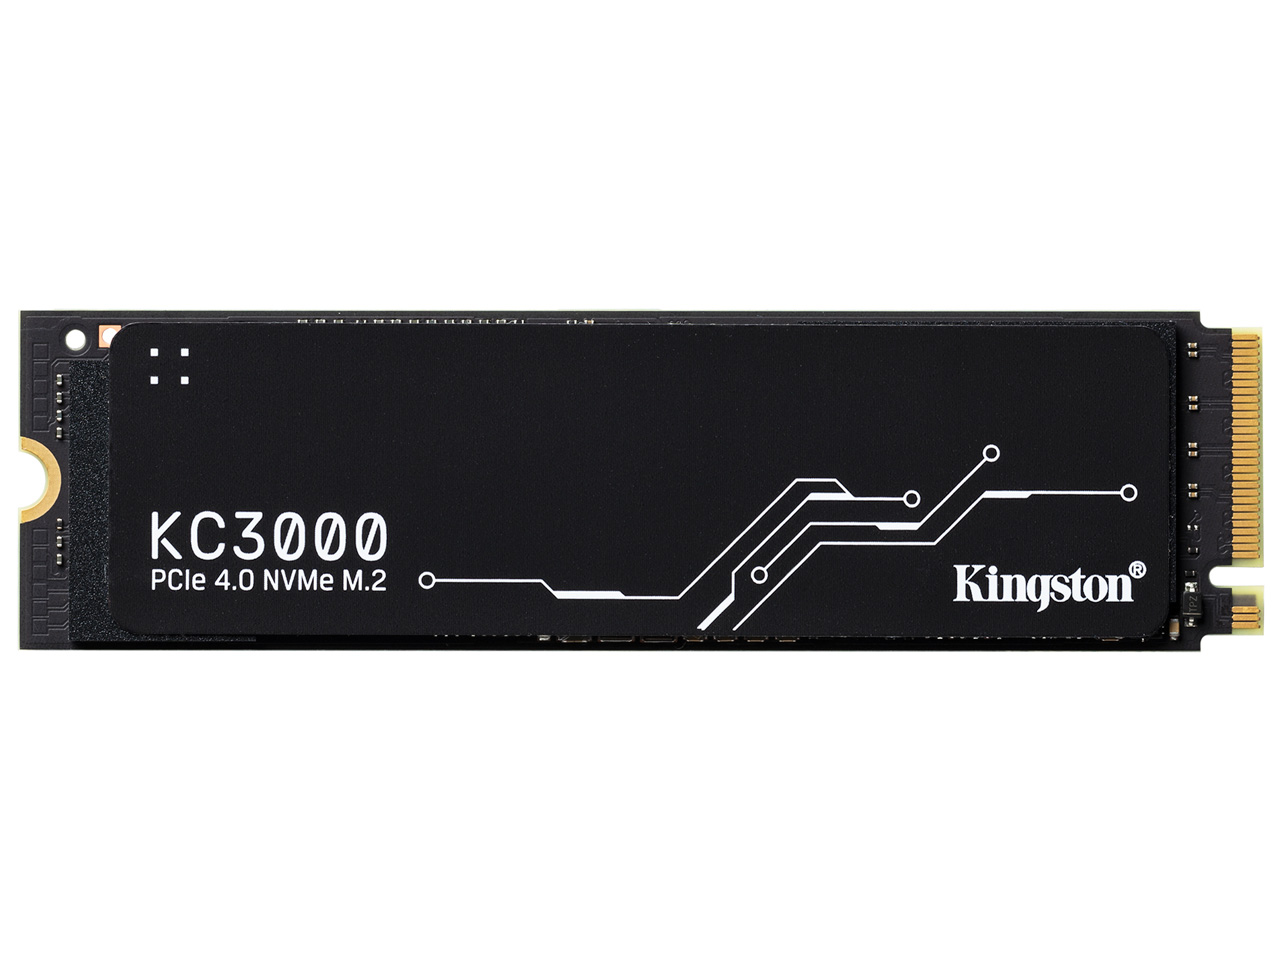 KC3000 PCIe 4.0 NVMe M.2 SSD SKC3000D/4096G